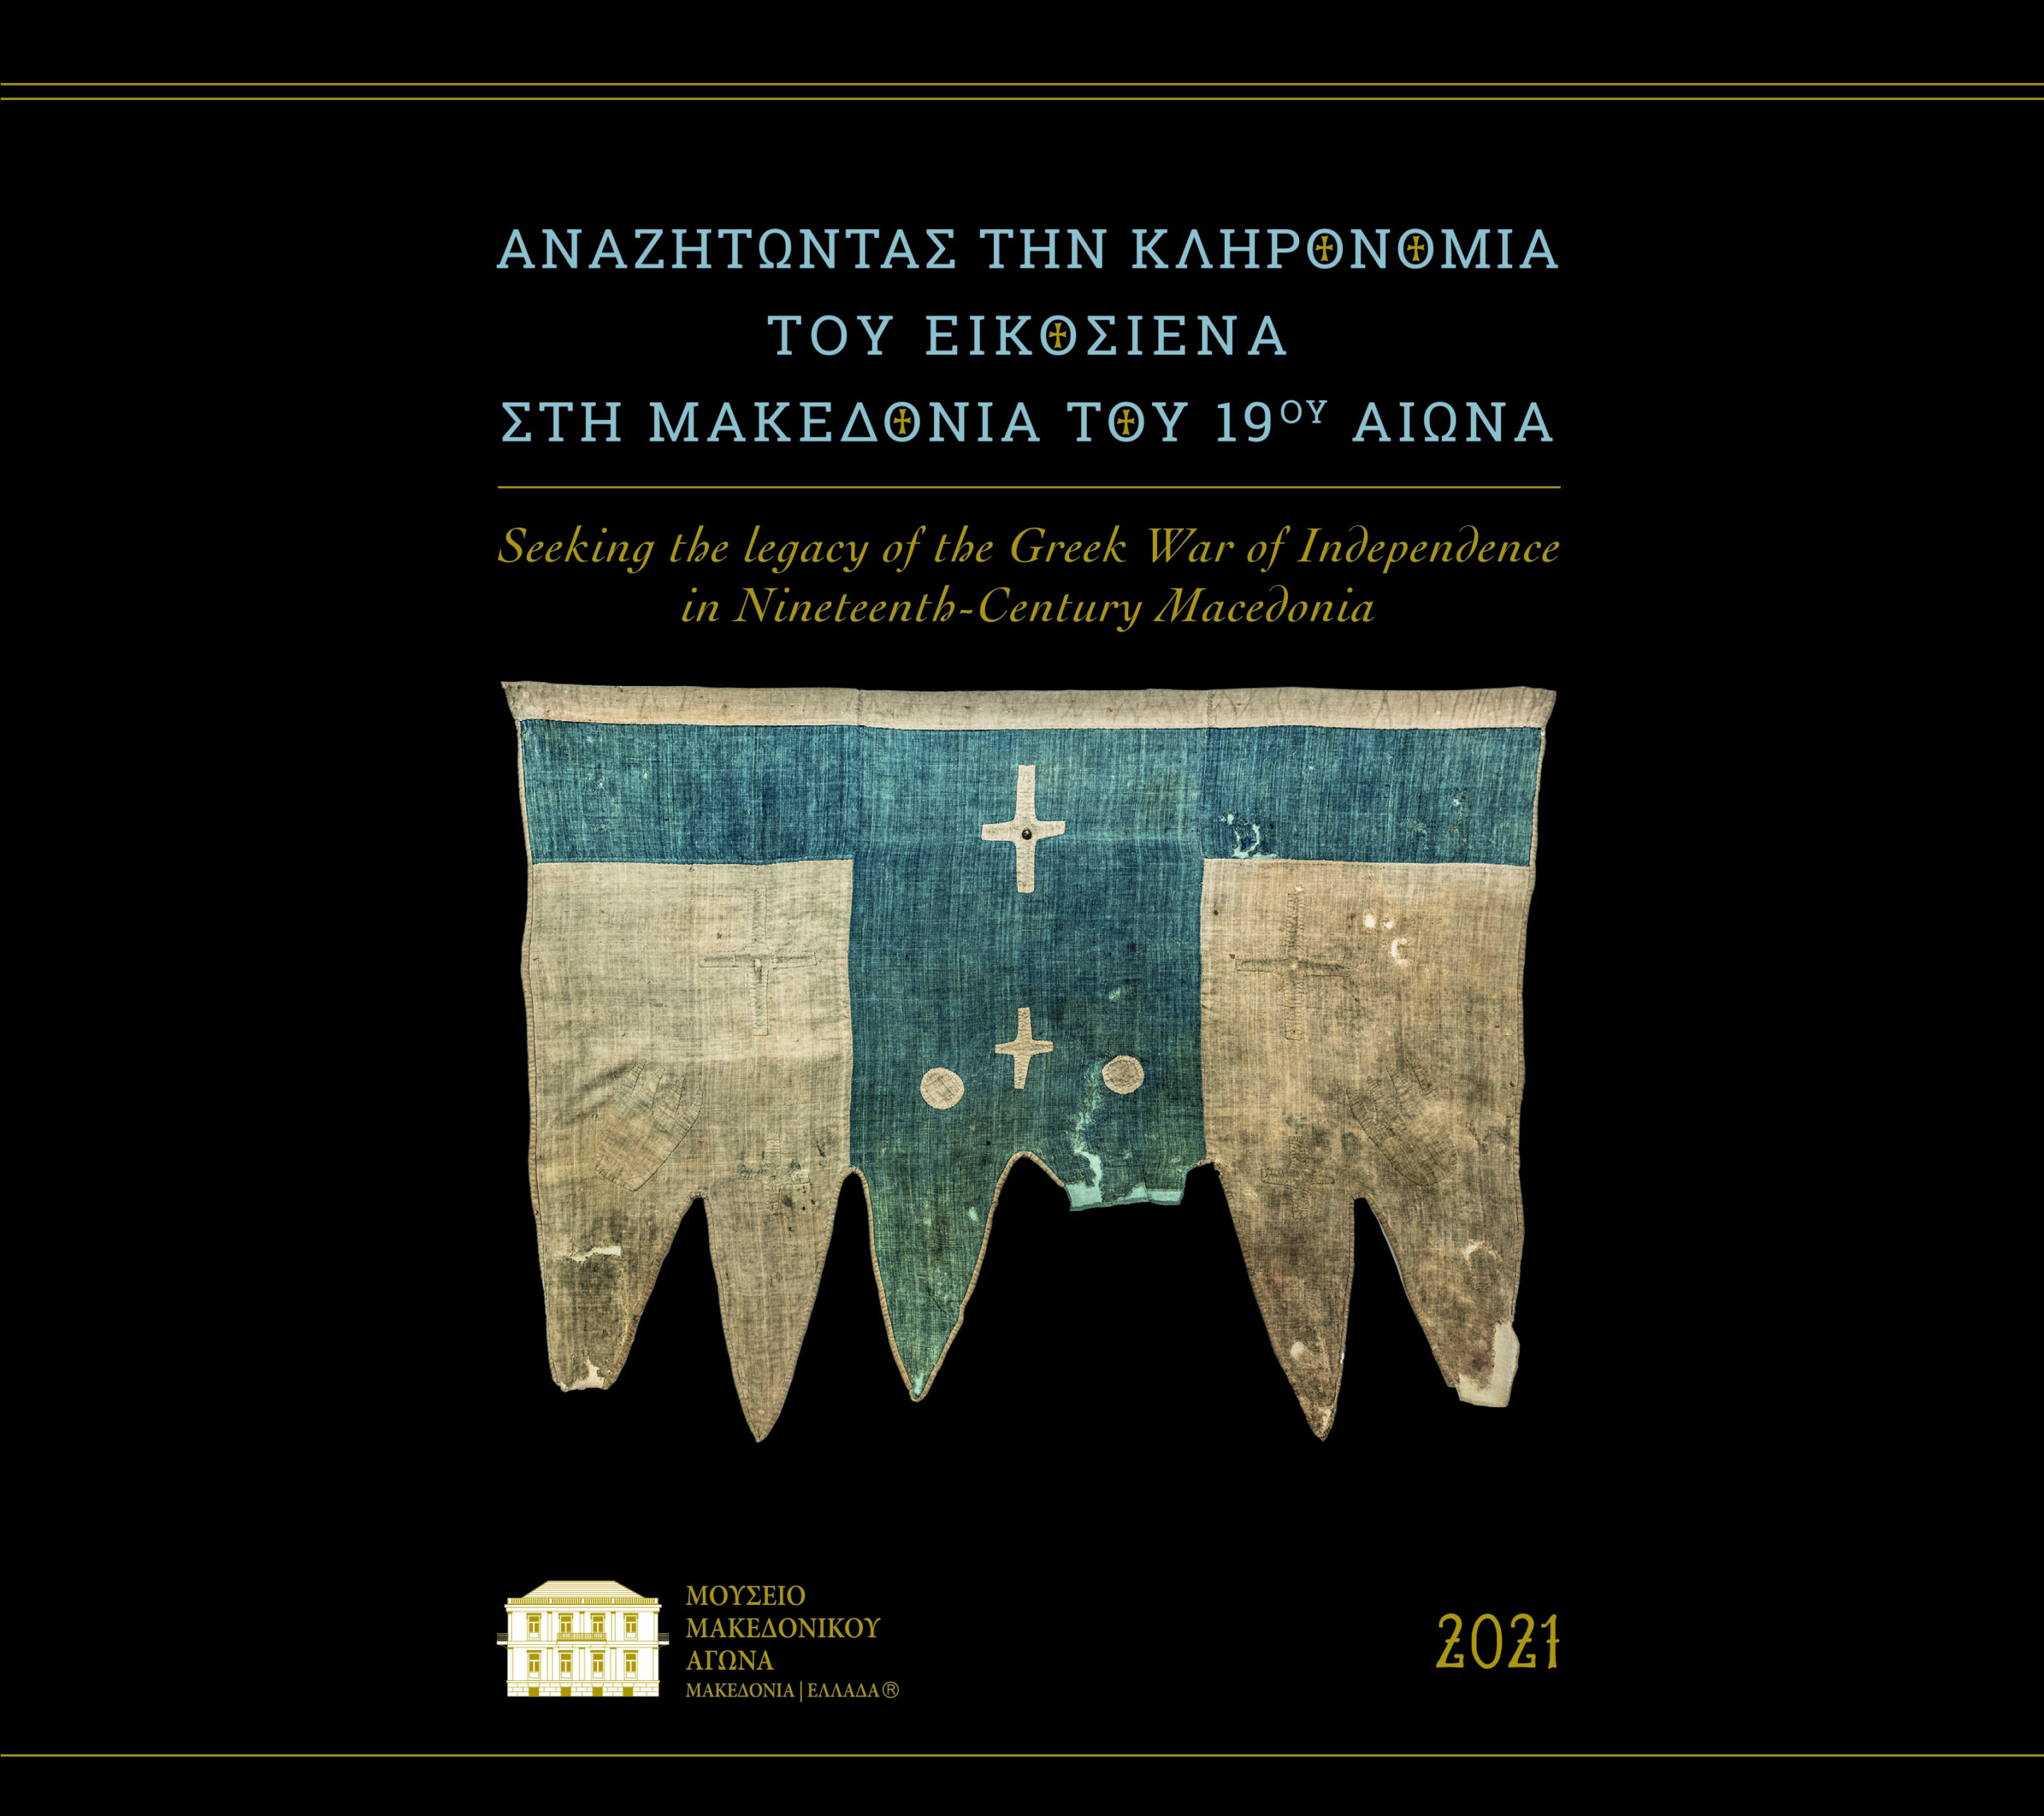 «Αναζητώντας την Κληρονομιά του Εικοσιένα στη Μακεδονία του 19ουαιώνα» ο τίτλος του Ημερολογίου για το 2021 του Ιδρύματος Μουσείου Μακεδονικού Αγώνα